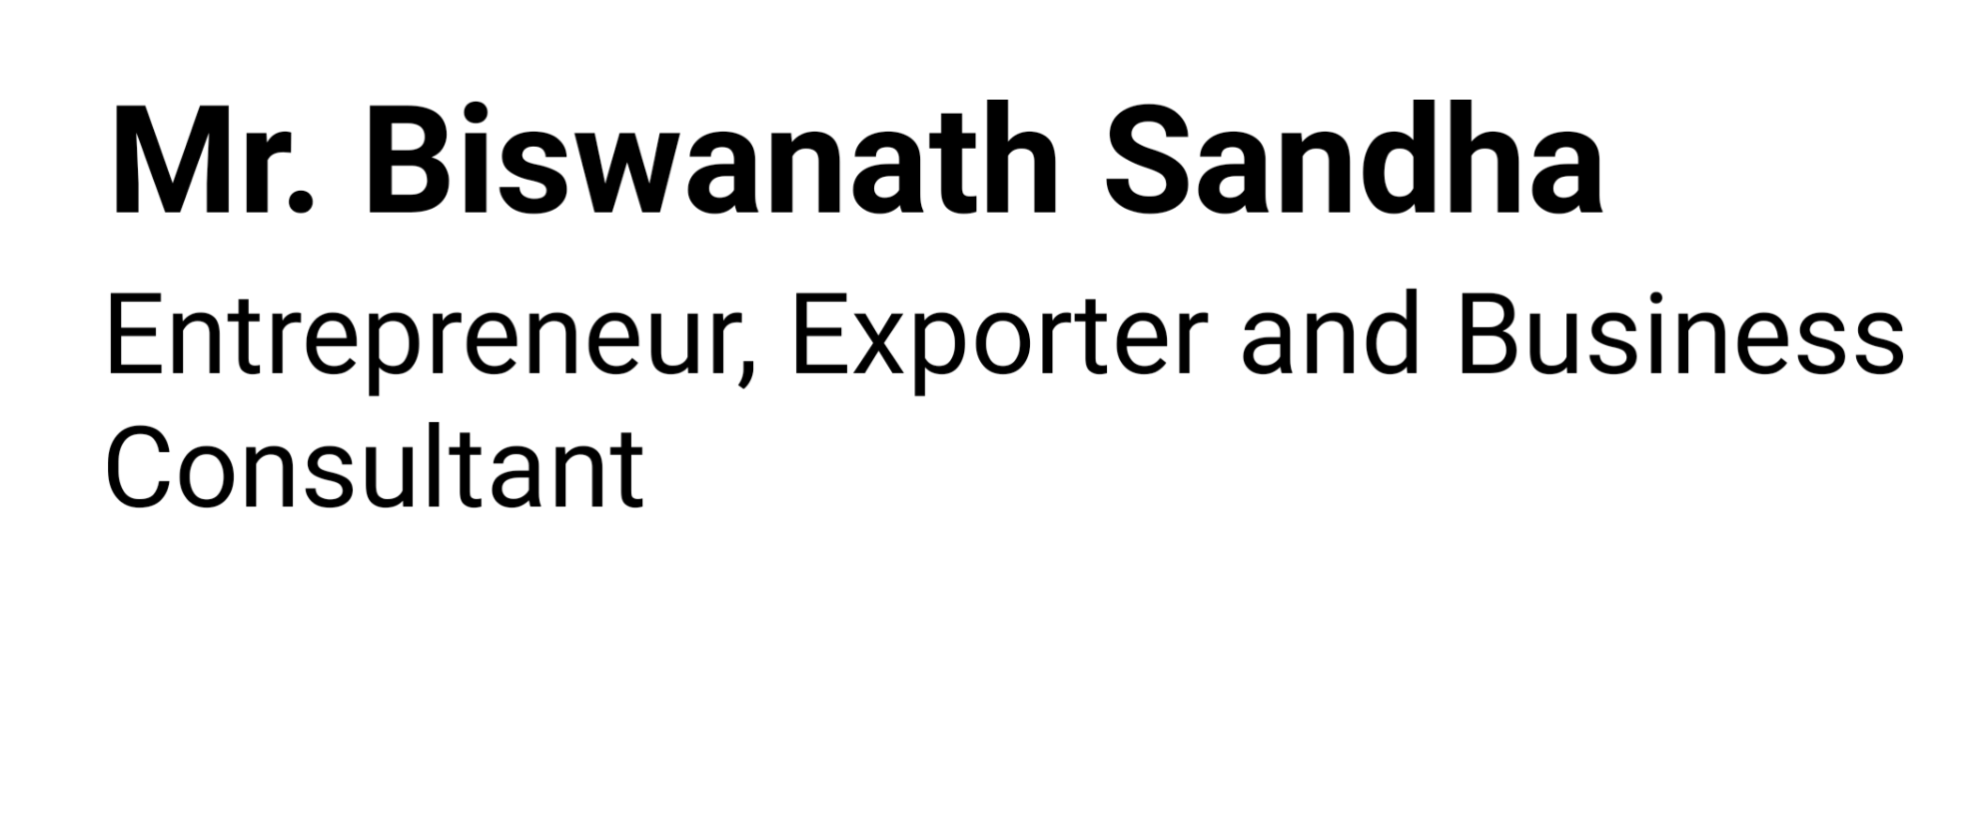 Mr. Biswanath Sandha